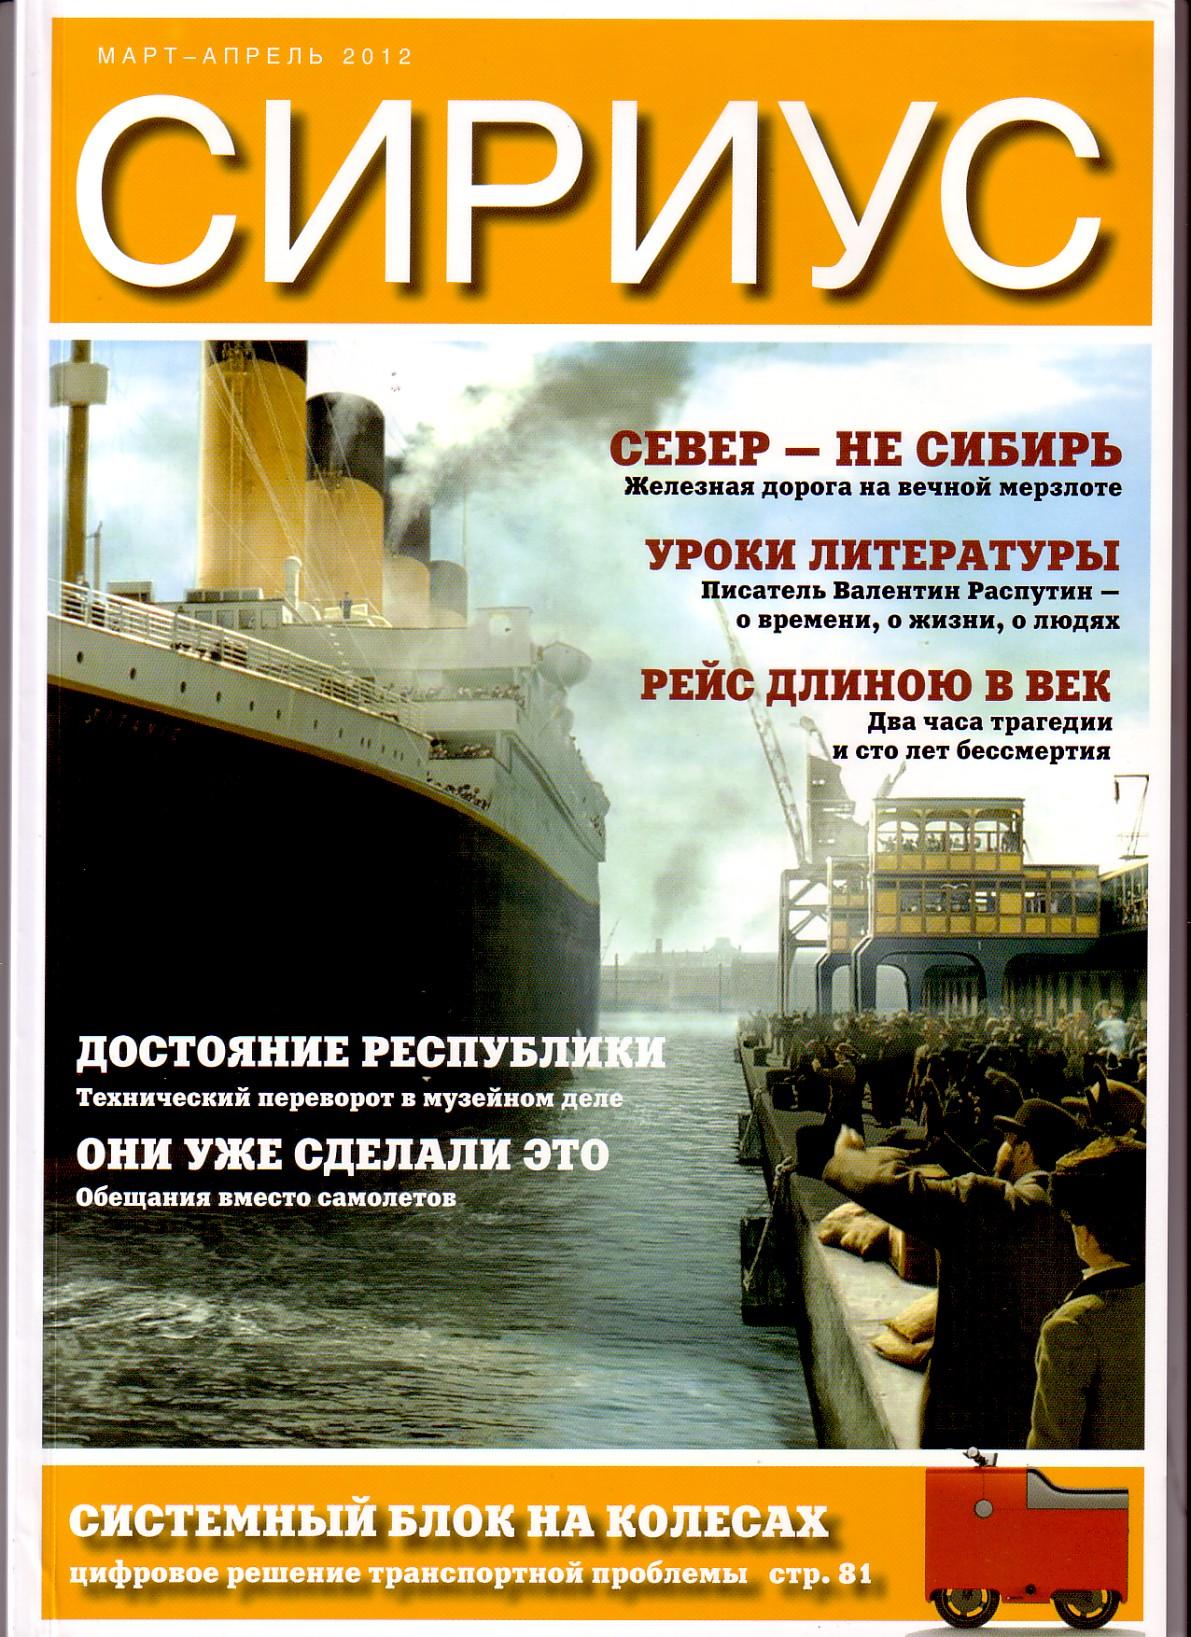 Норильская железная дорога — публикация в журнале   «Сириус», 2012 год